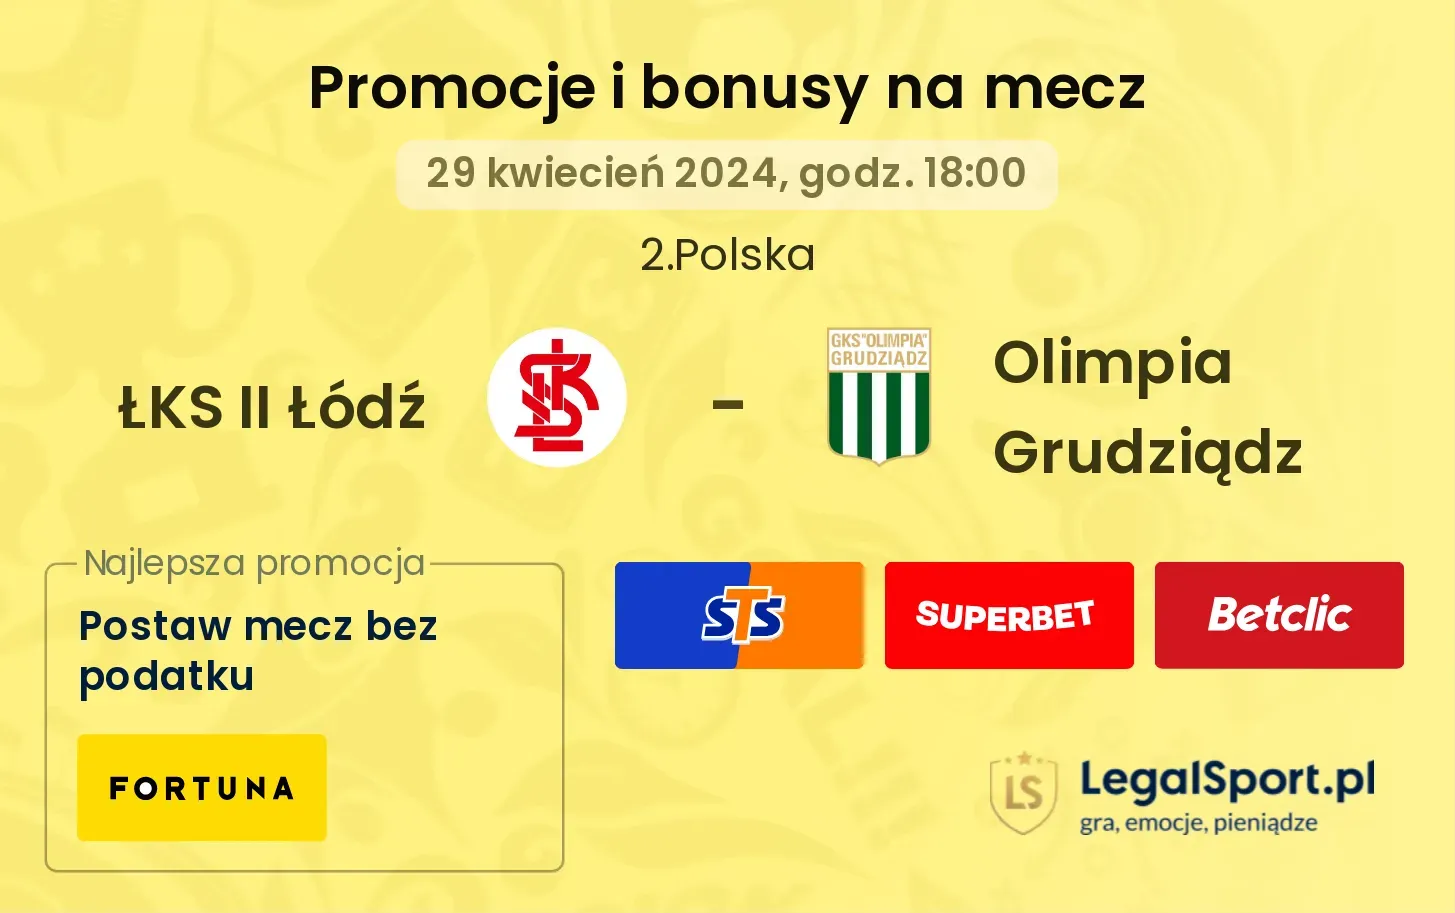 ŁKS II Łódź - Olimpia Grudziądz promocje bonusy na mecz